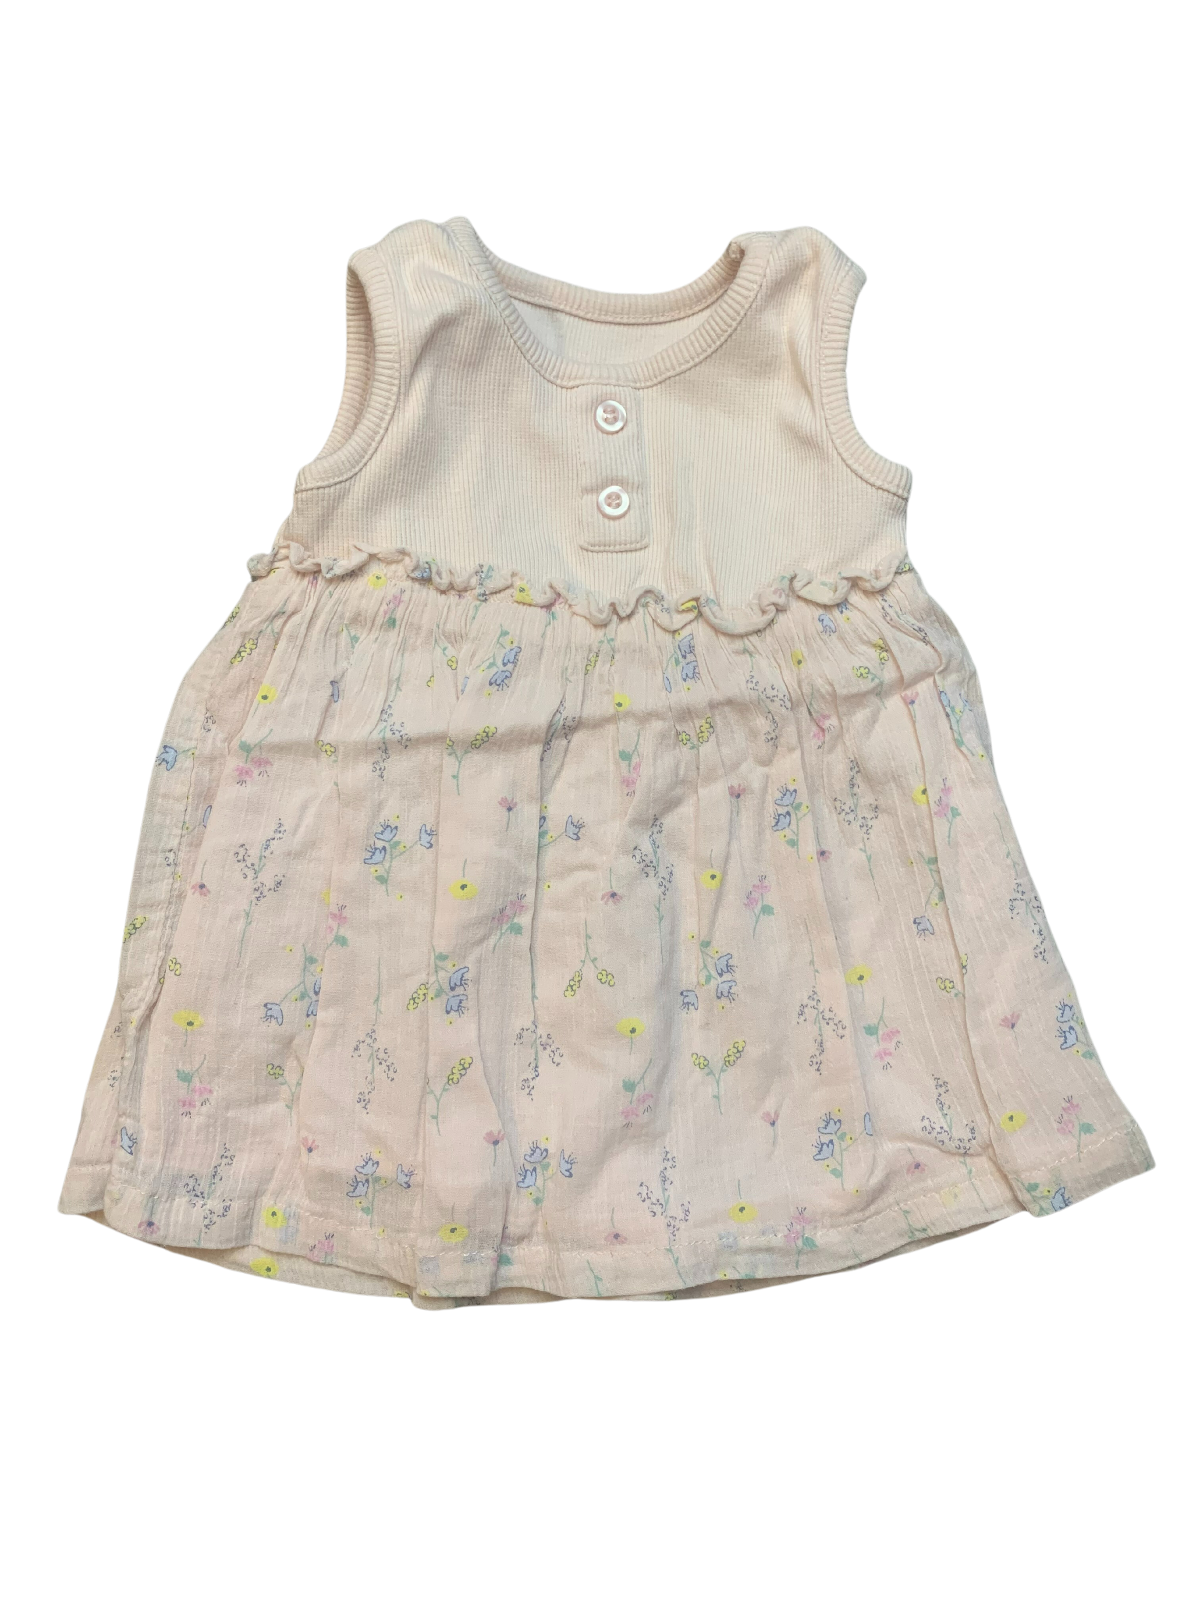 Matalan Floral Summer Dress Baby Girl 0-3 Months/